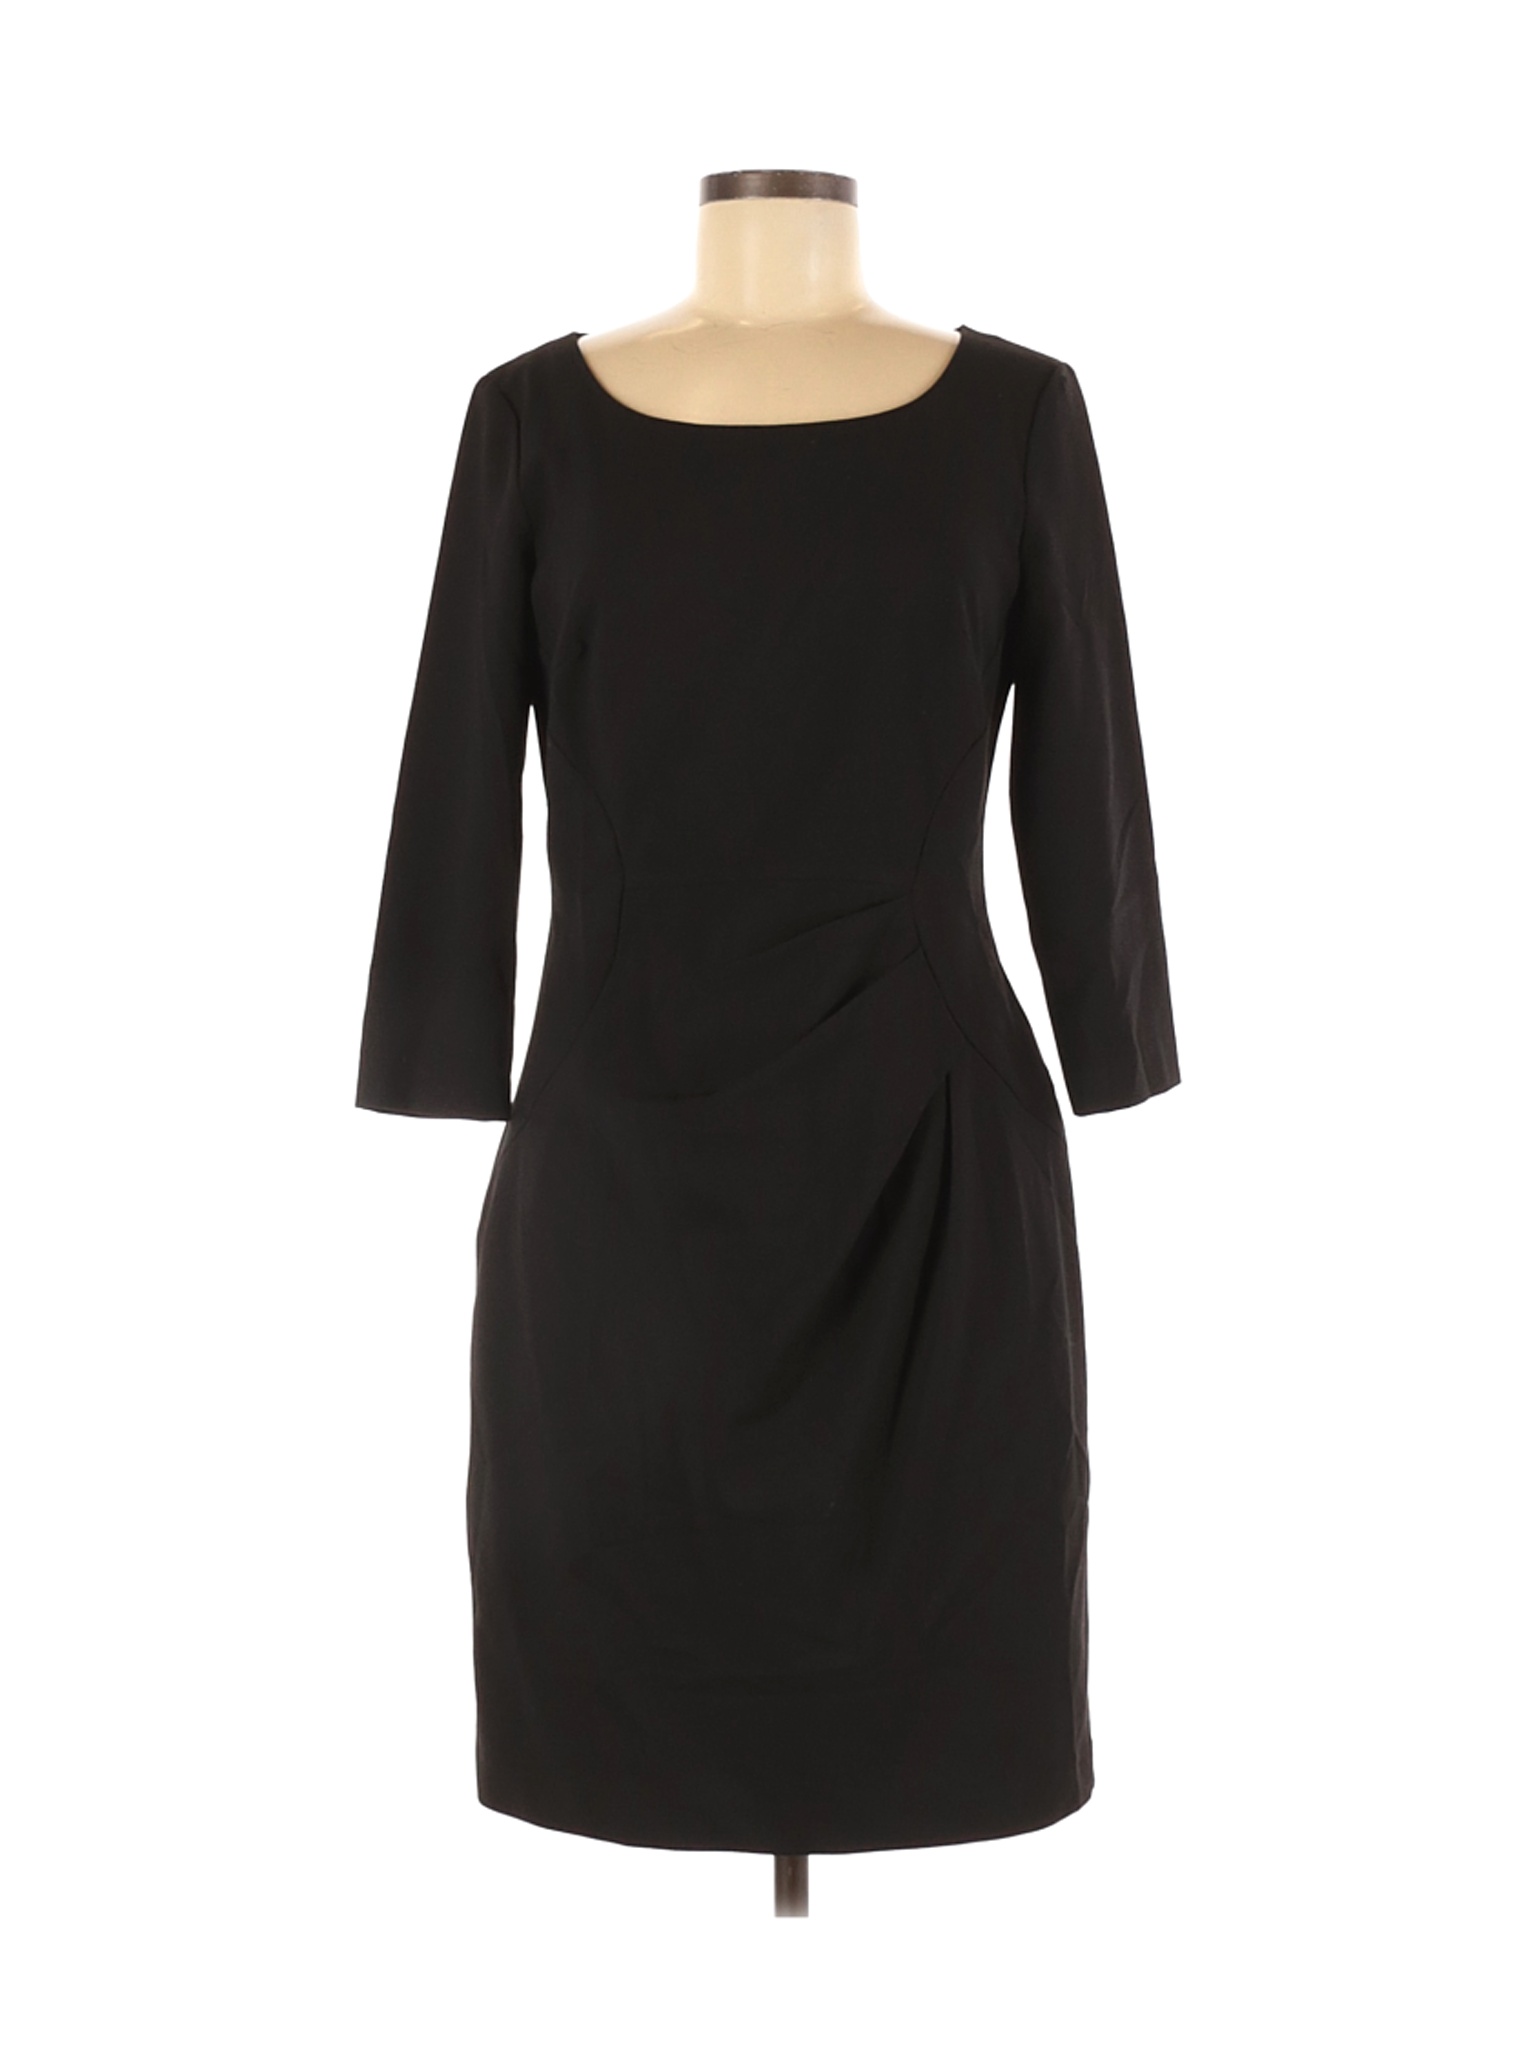 Calvin Klein Women Black Cocktail Dress 8 | eBay